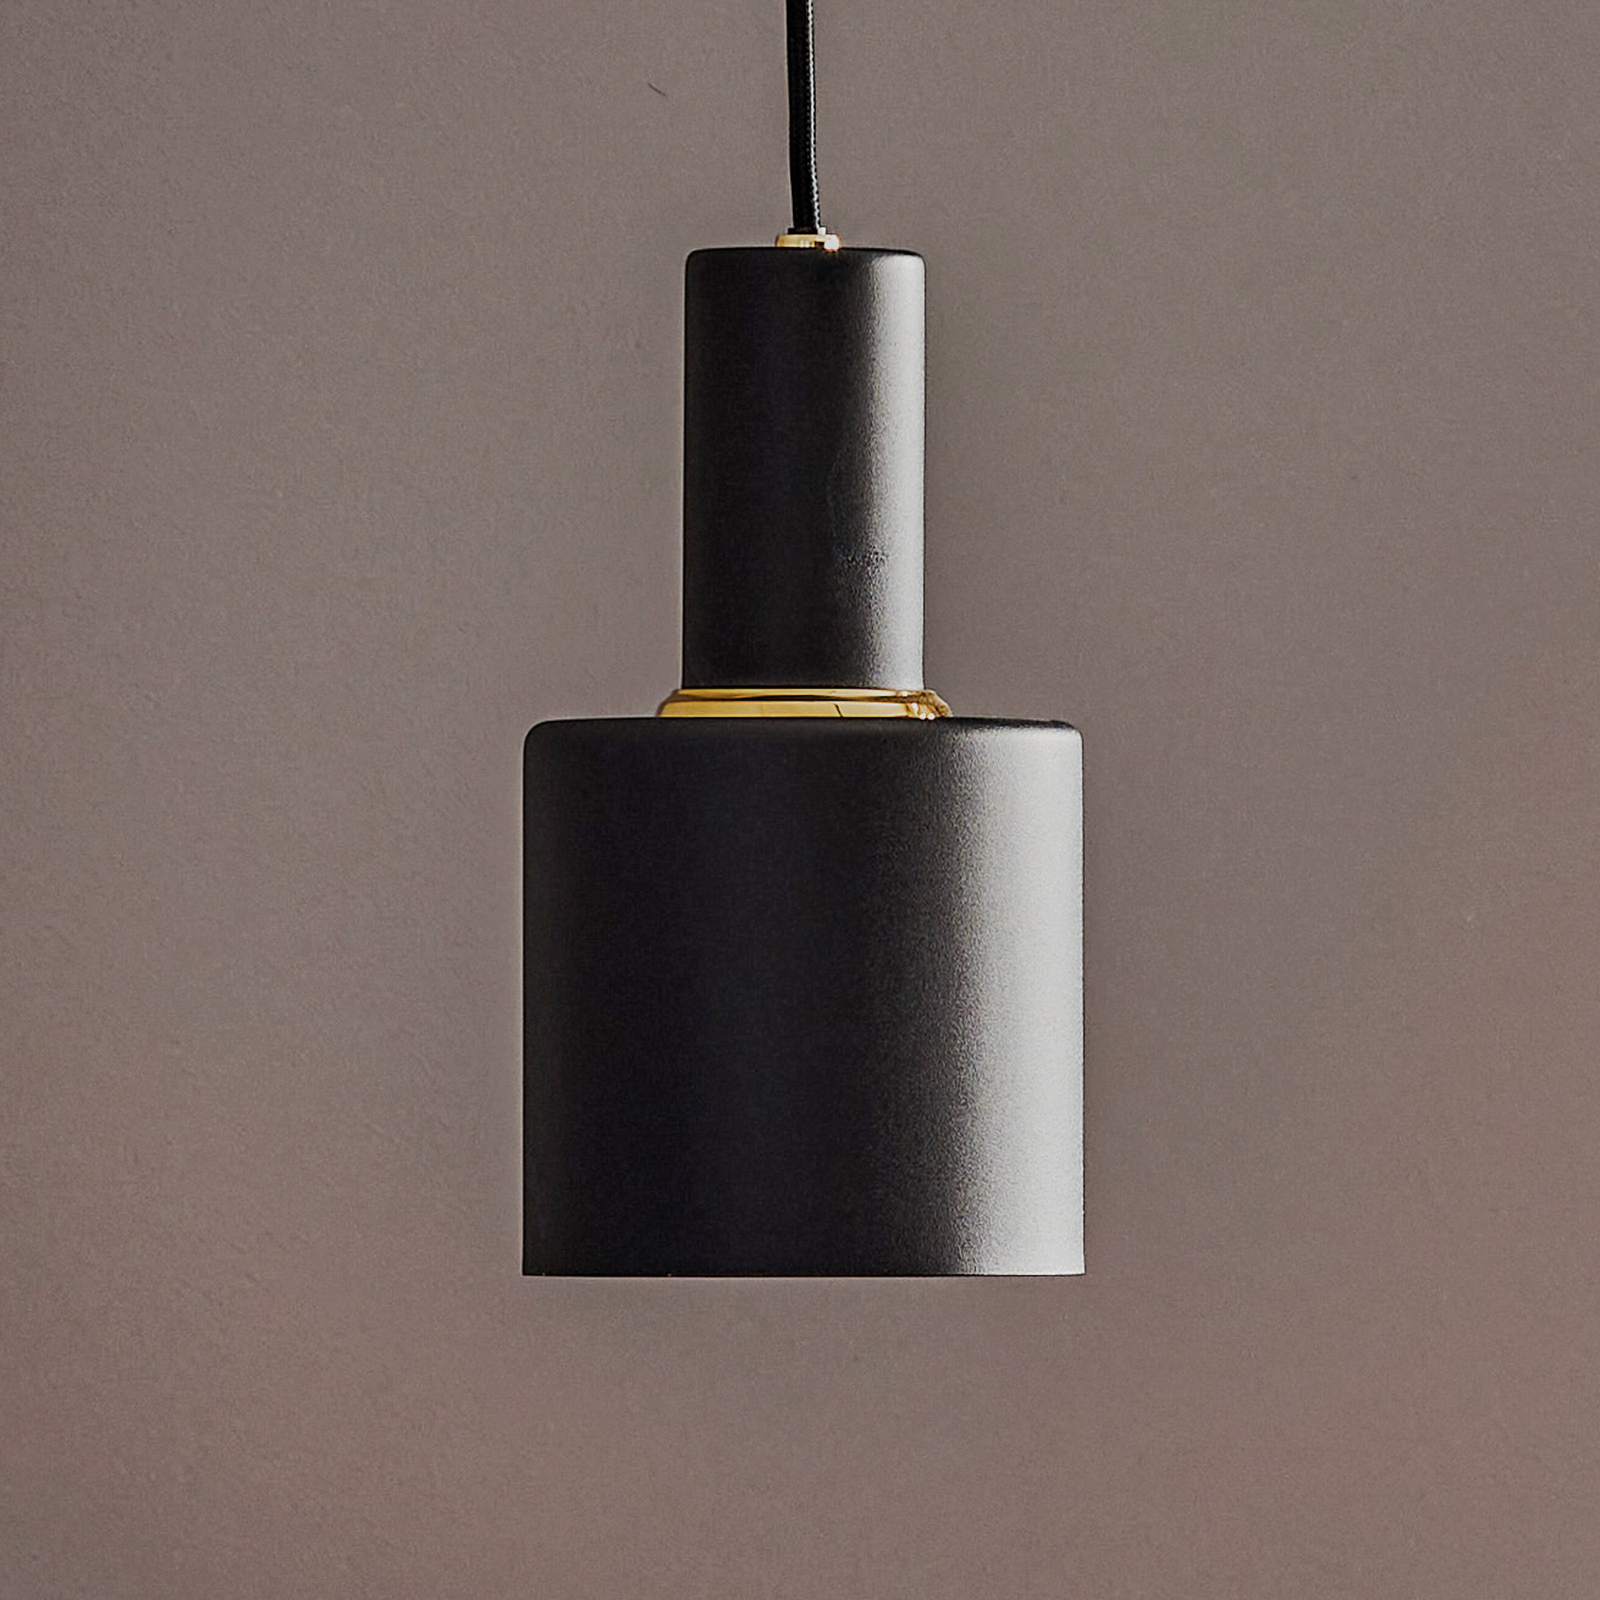 Selma hængelampe, 1 lyskilde, sort, Ø 12 cm